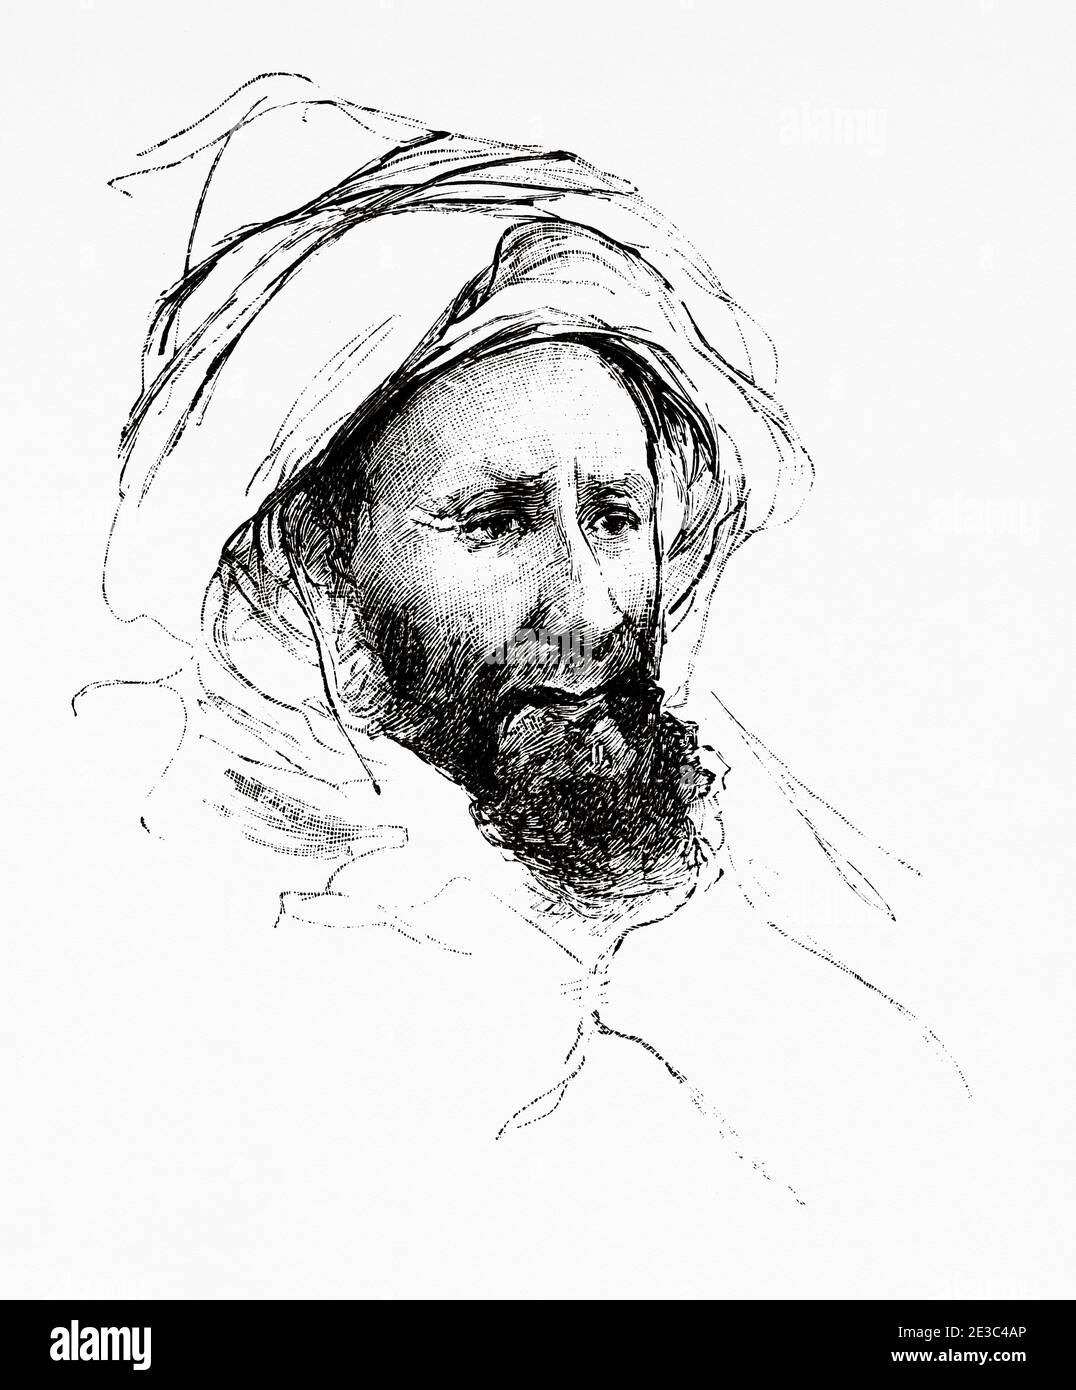 Portrait du secrétaire Sid Kerdudi du prince marocain Muley Arafa. Illustration gravée de la Ilustracion Española y Americana datant du XIXe siècle 1894 Banque D'Images